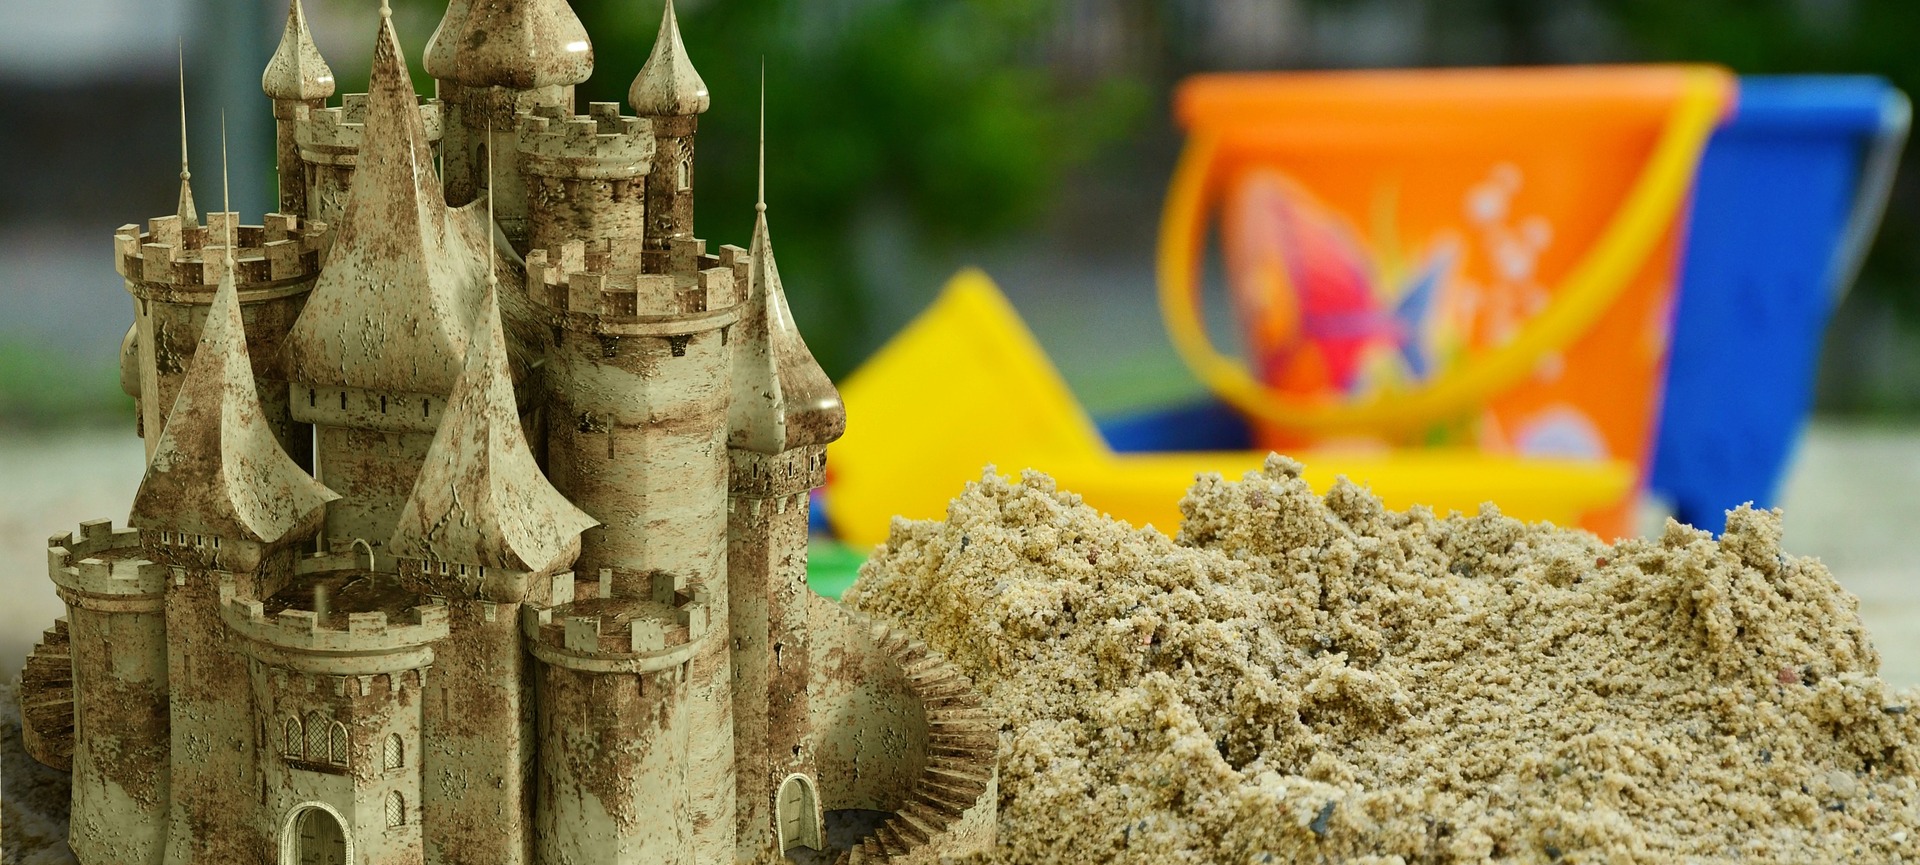 Sand castle